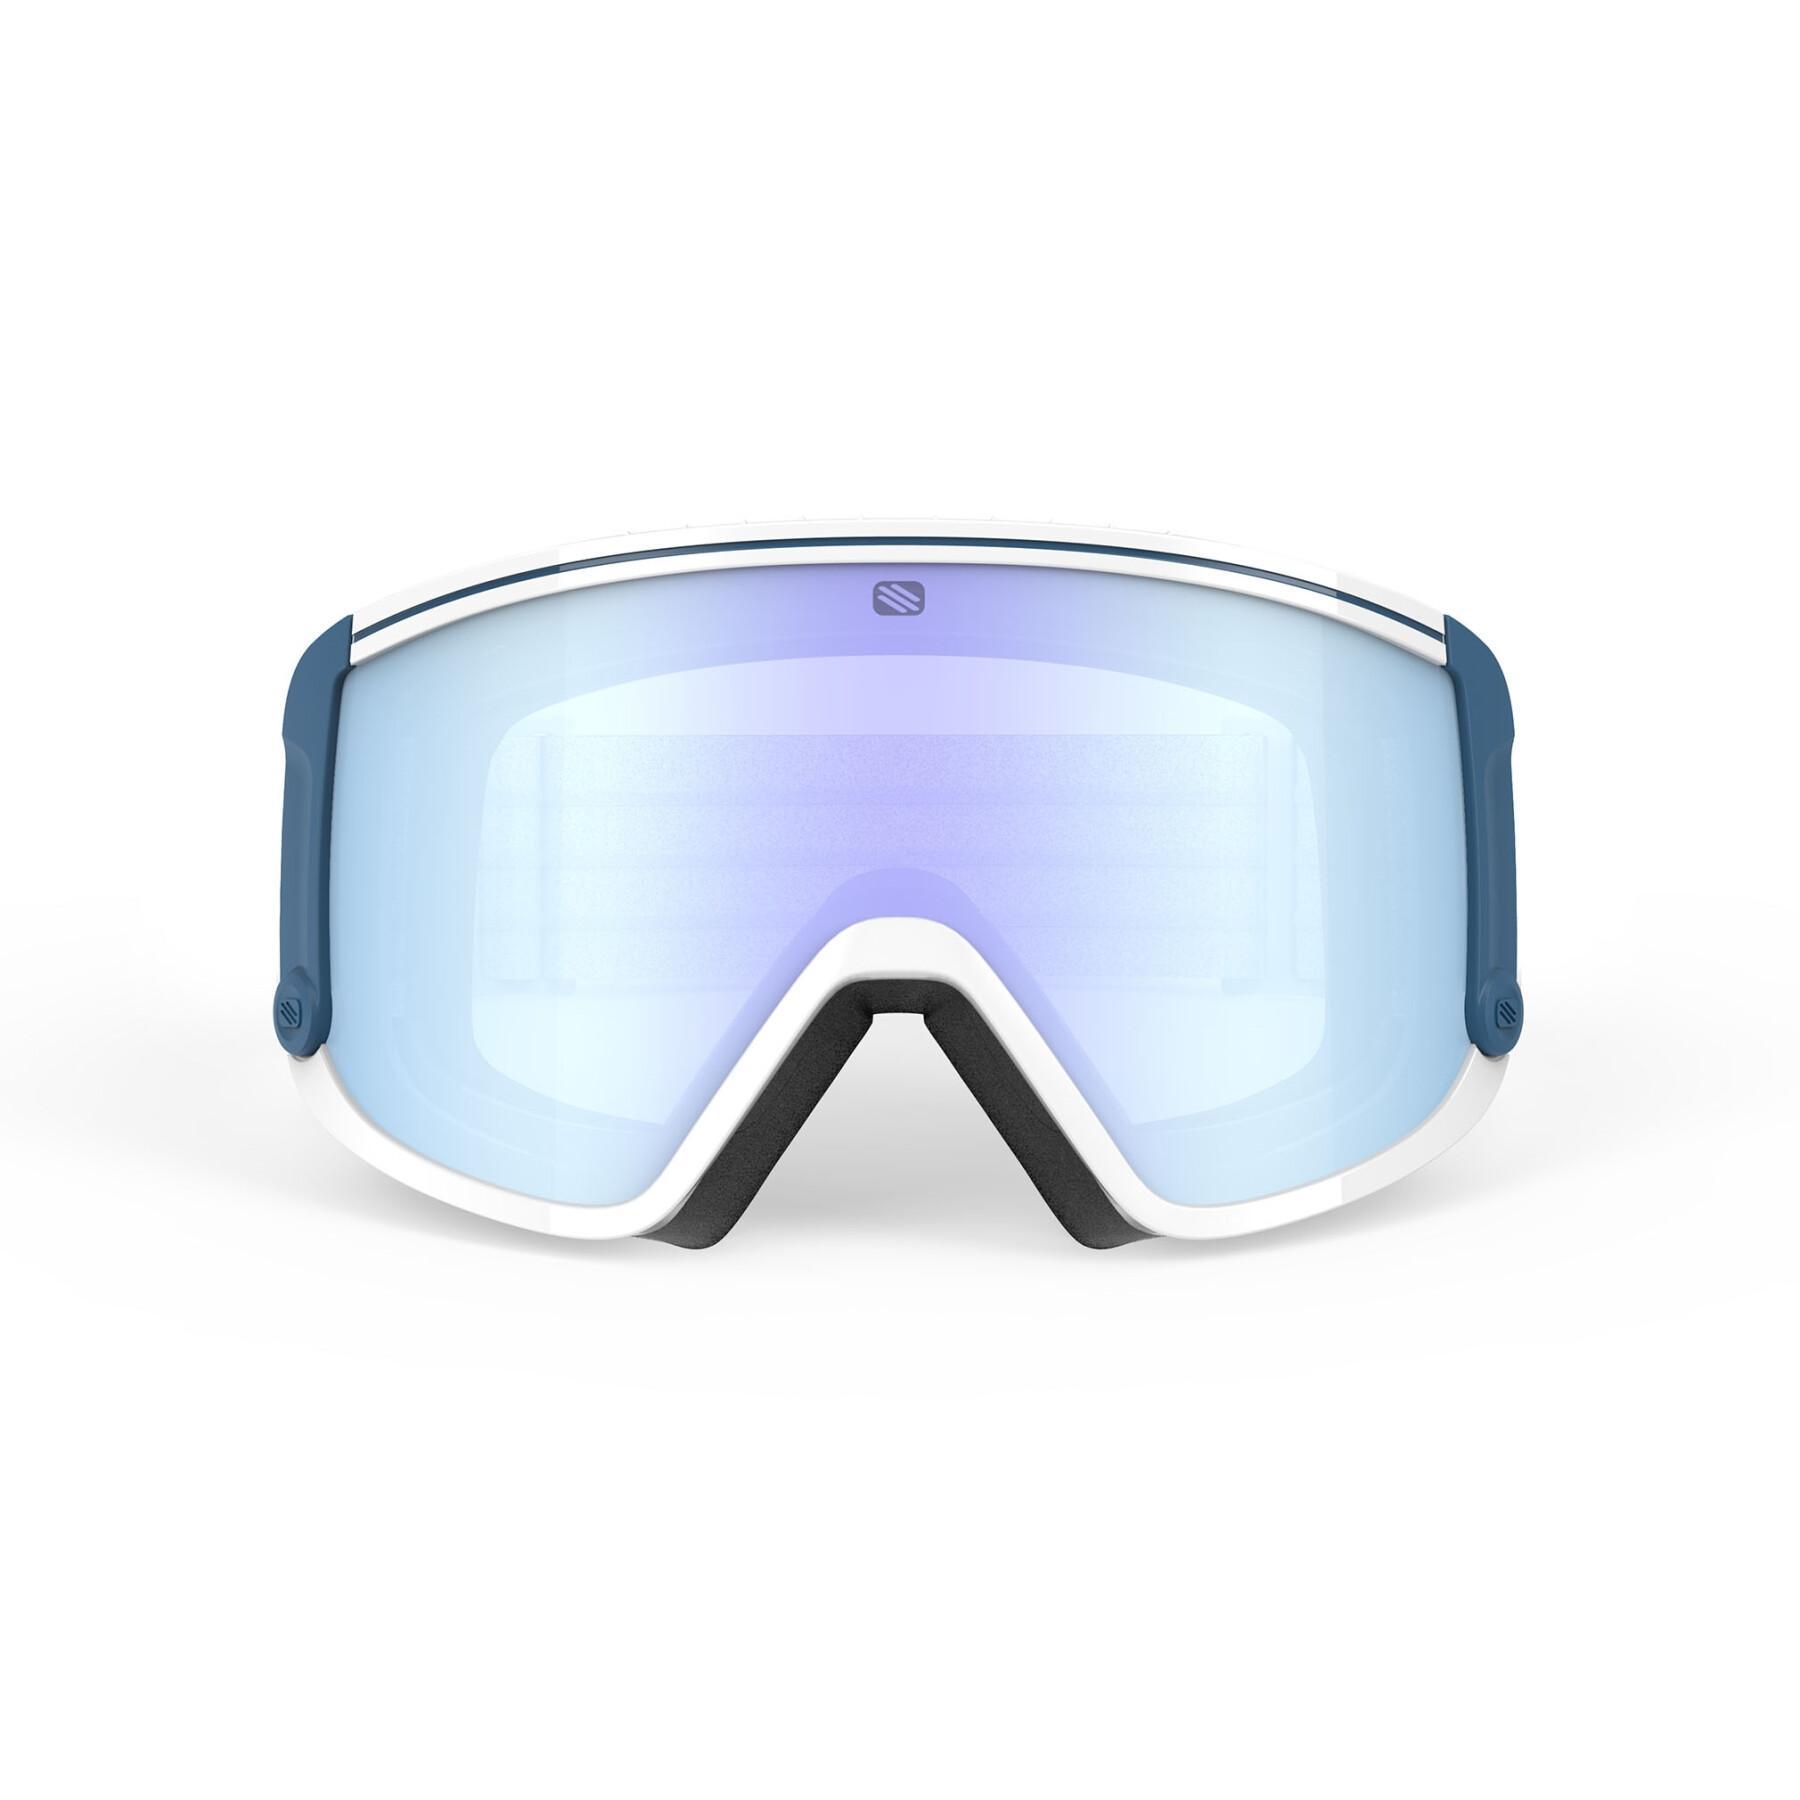 Máscara de esqui Rudy Project Spincut Optics Multilaser